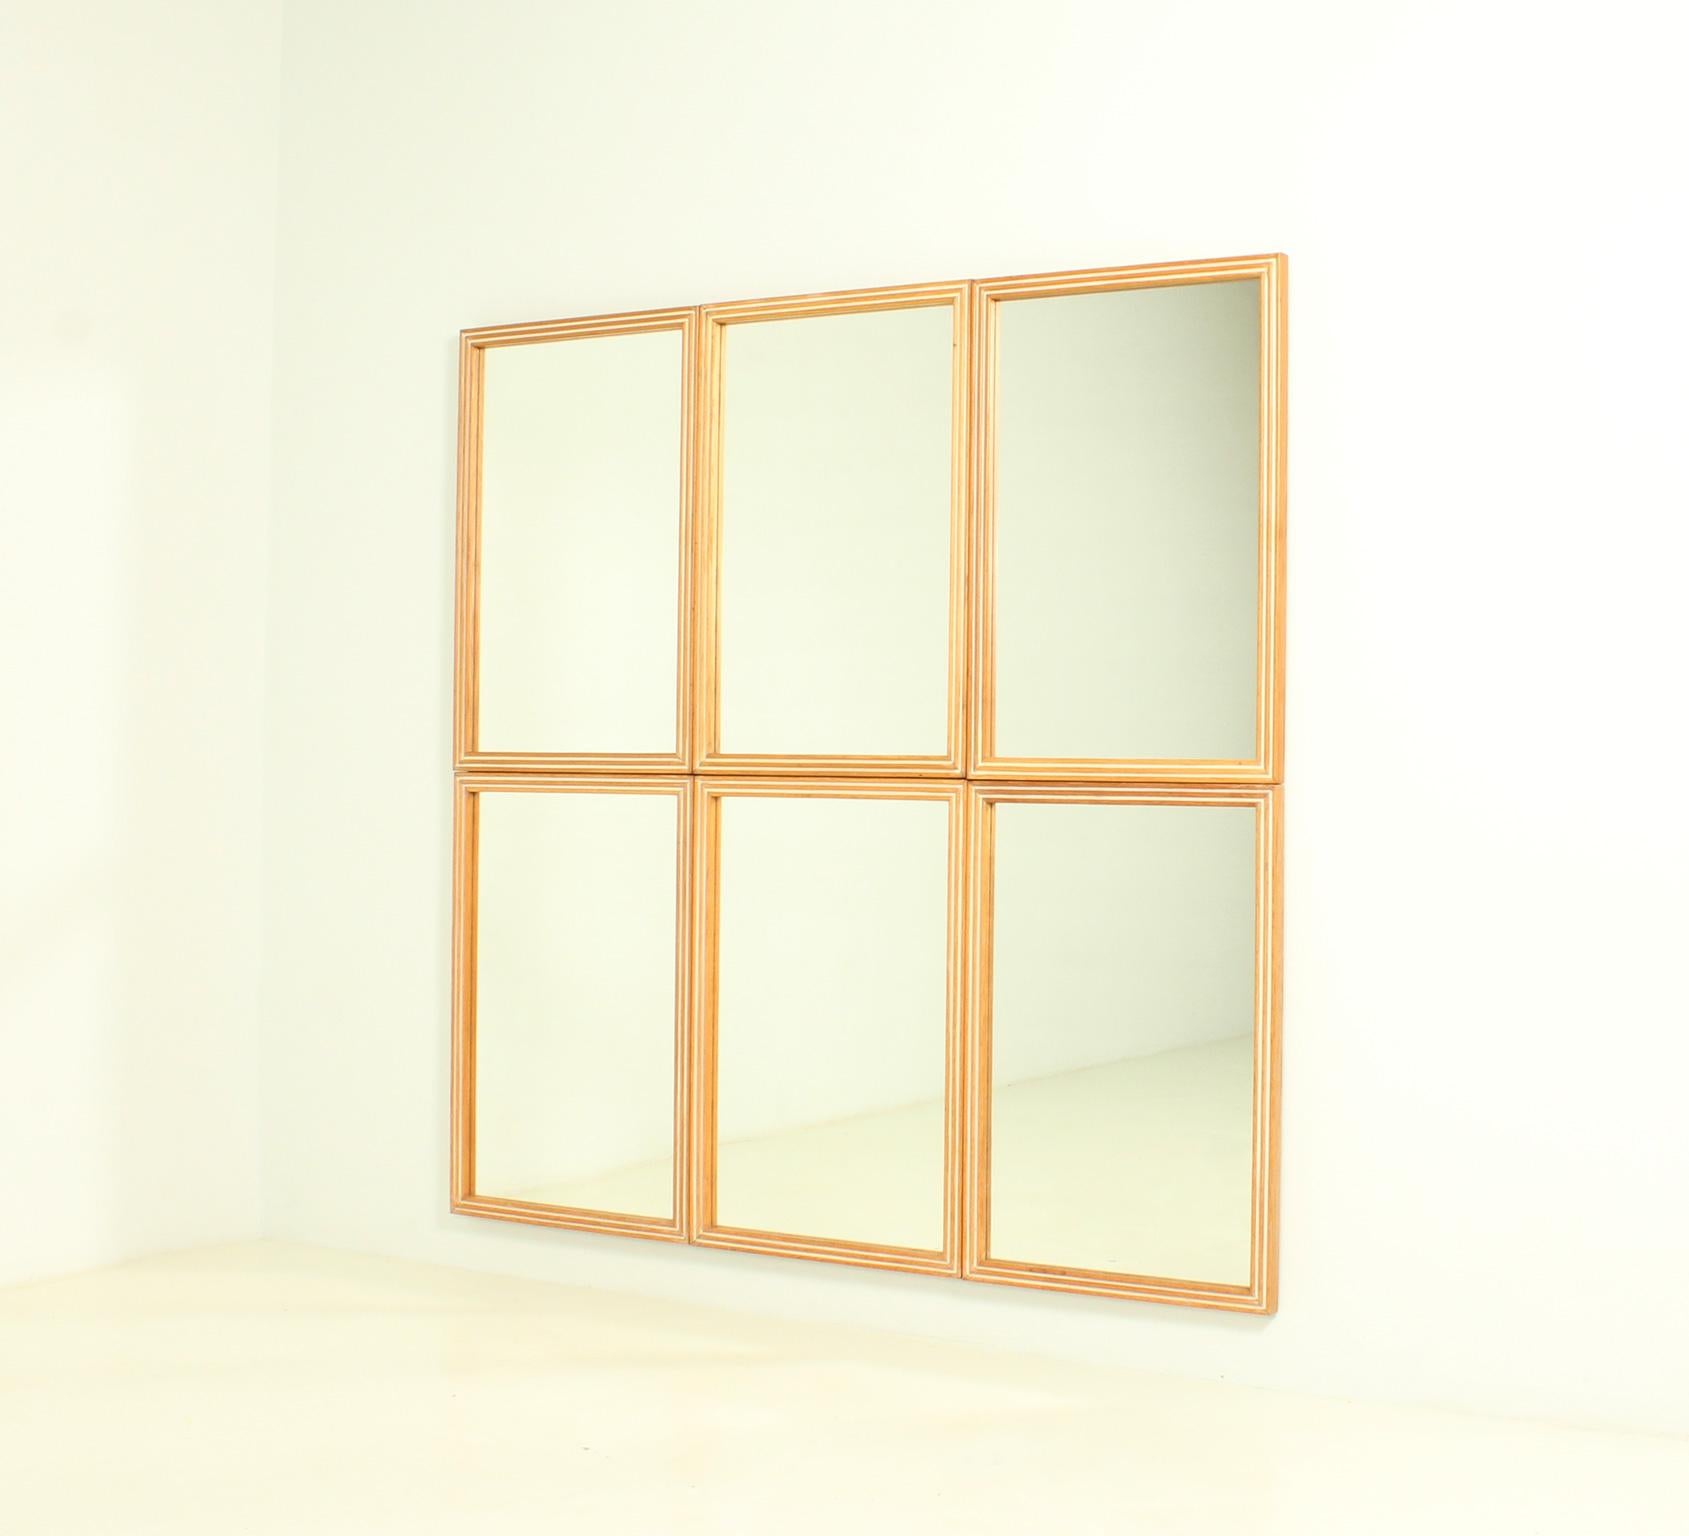 Satz von sechs hölzernen Wandspiegeln aus den 1950er Jahren, Spanien. Natürliche Eiche und keramisierter Rahmen mit Spiegelglas. Sie können einzeln oder in einer Komposition wie dieser verwendet werden.

Jeder Spiegel misst 60 B. x 4,5 T. x 90 H.